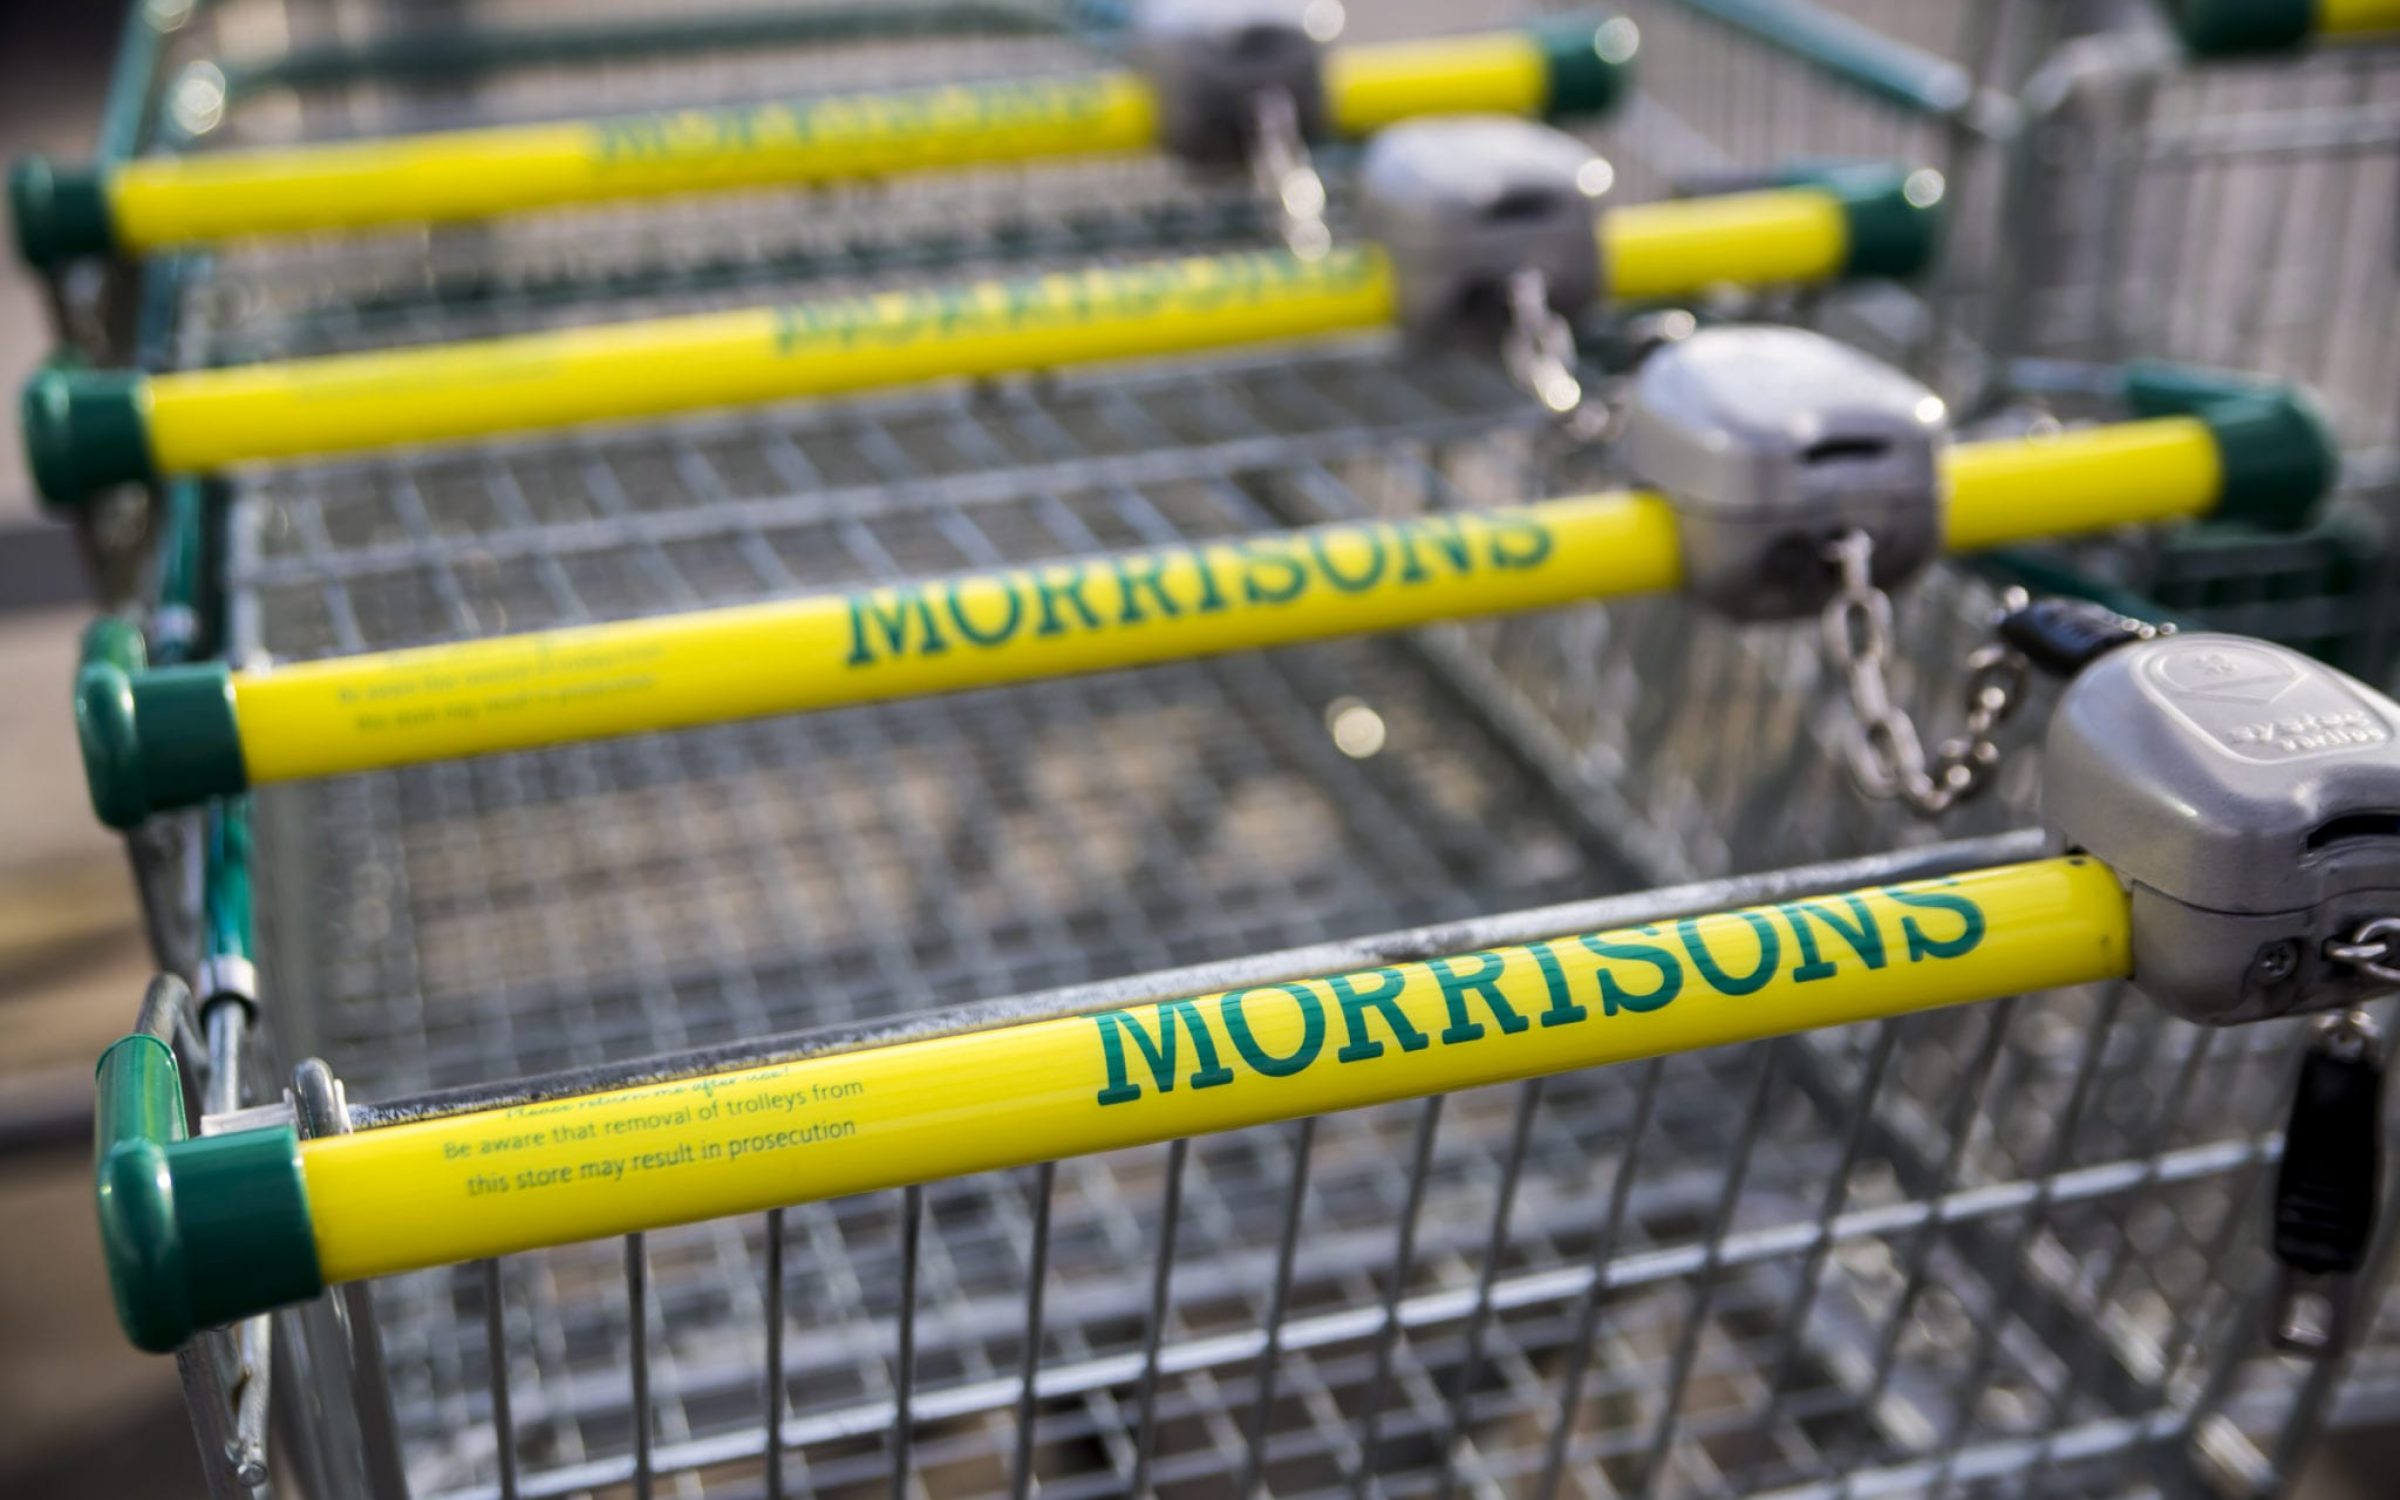 Morrisons supermarket trolley showing logo outside supermarket in Leeds, UK.